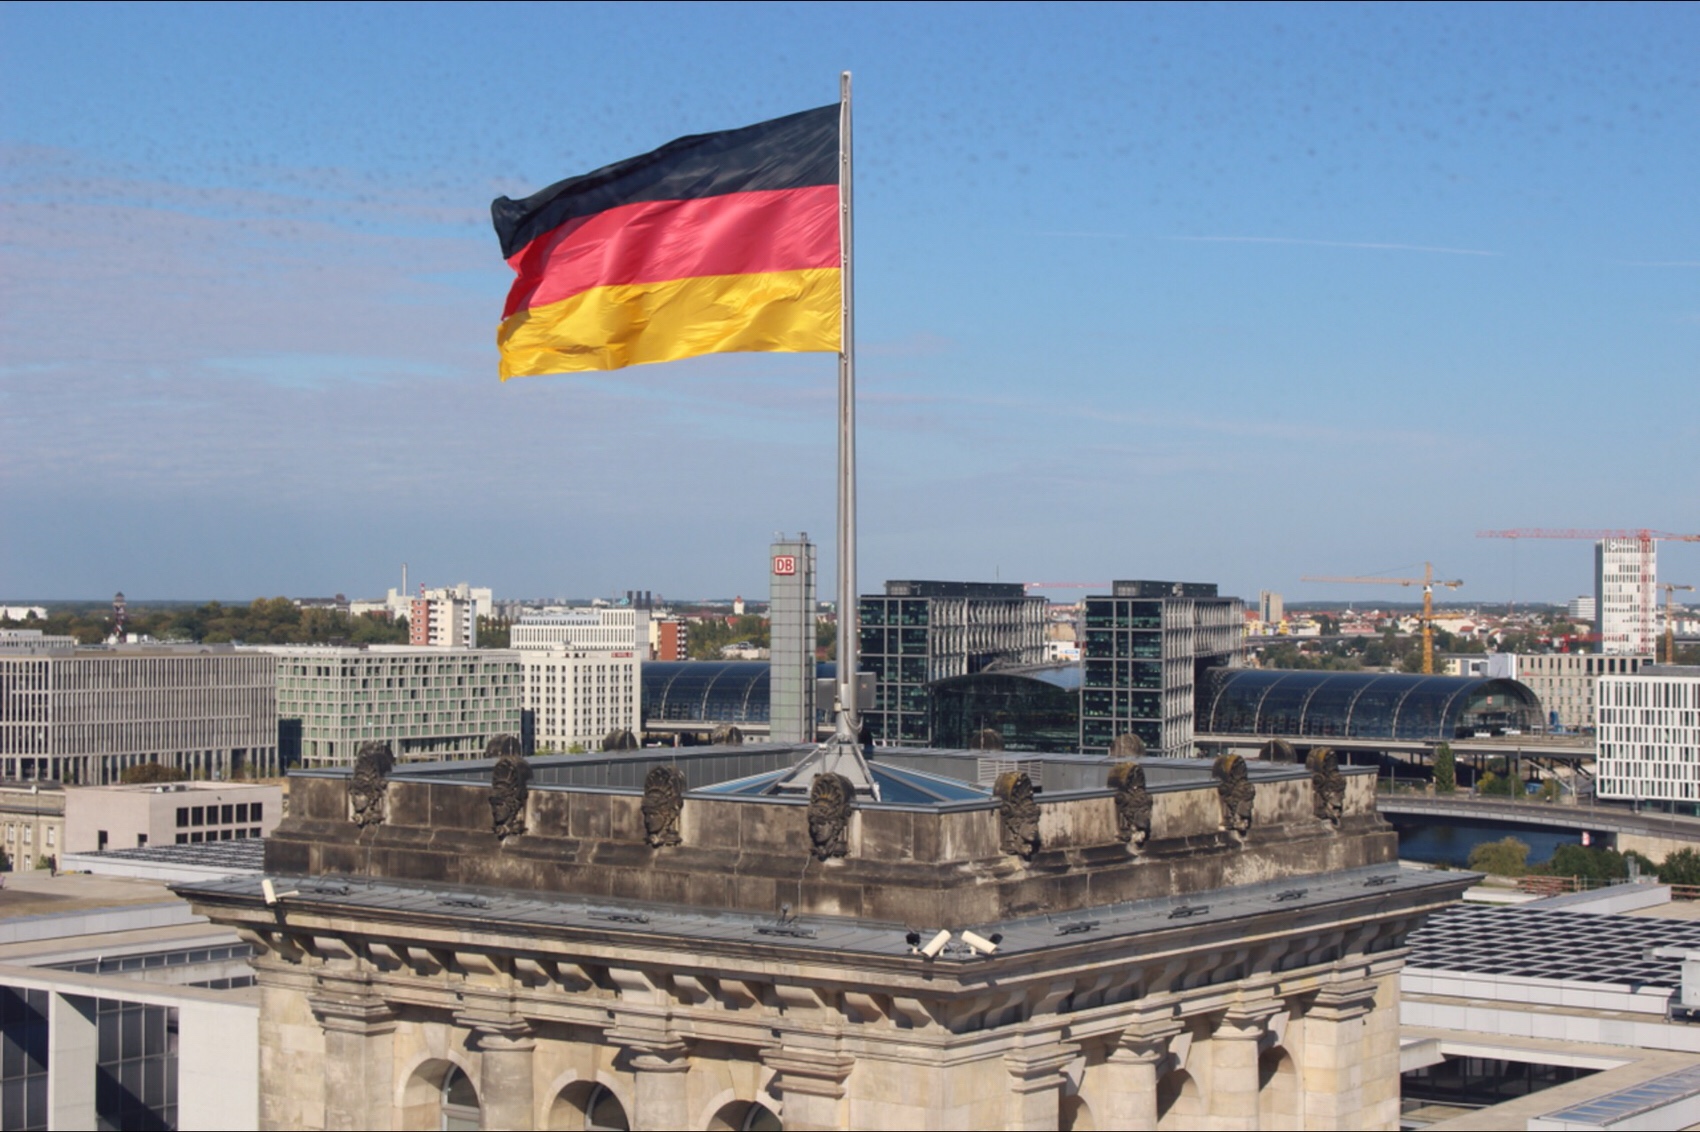 ベルリン旅行：ドイツ連邦議会議事堂の無料見学